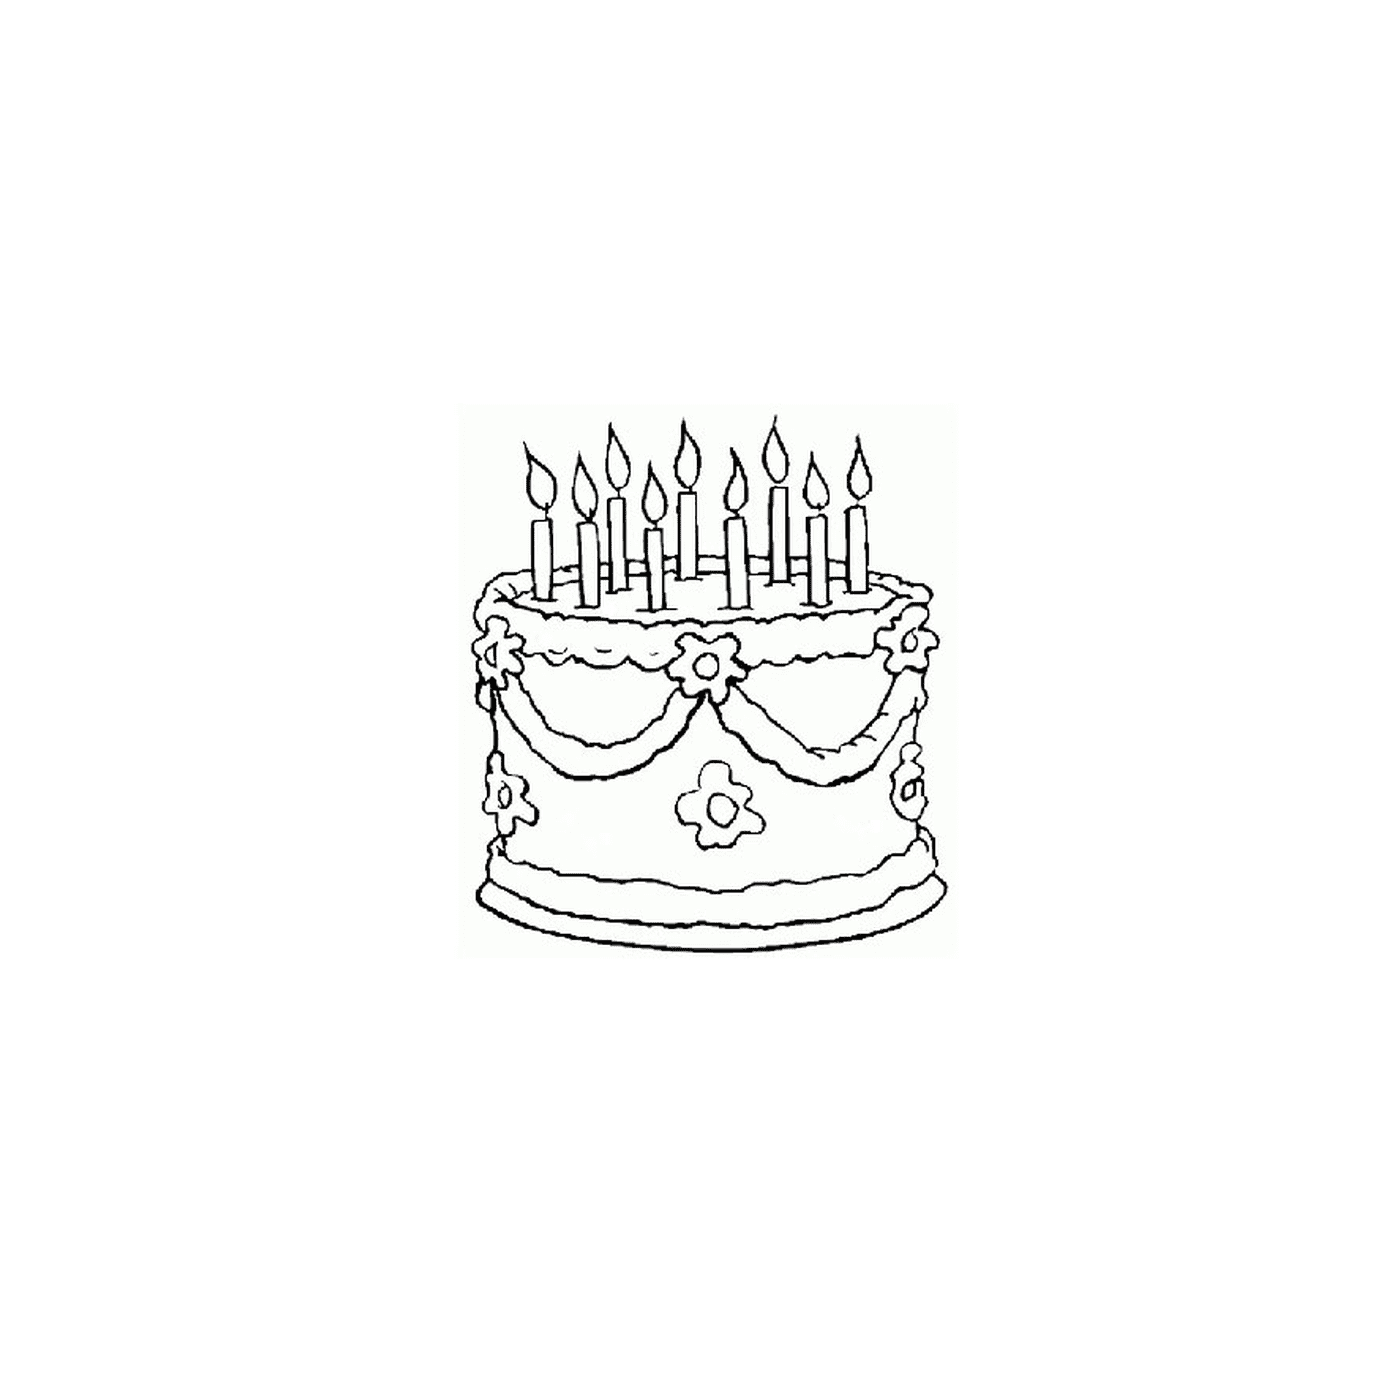   un gâteau d'anniversaire avec des bougies allumées 